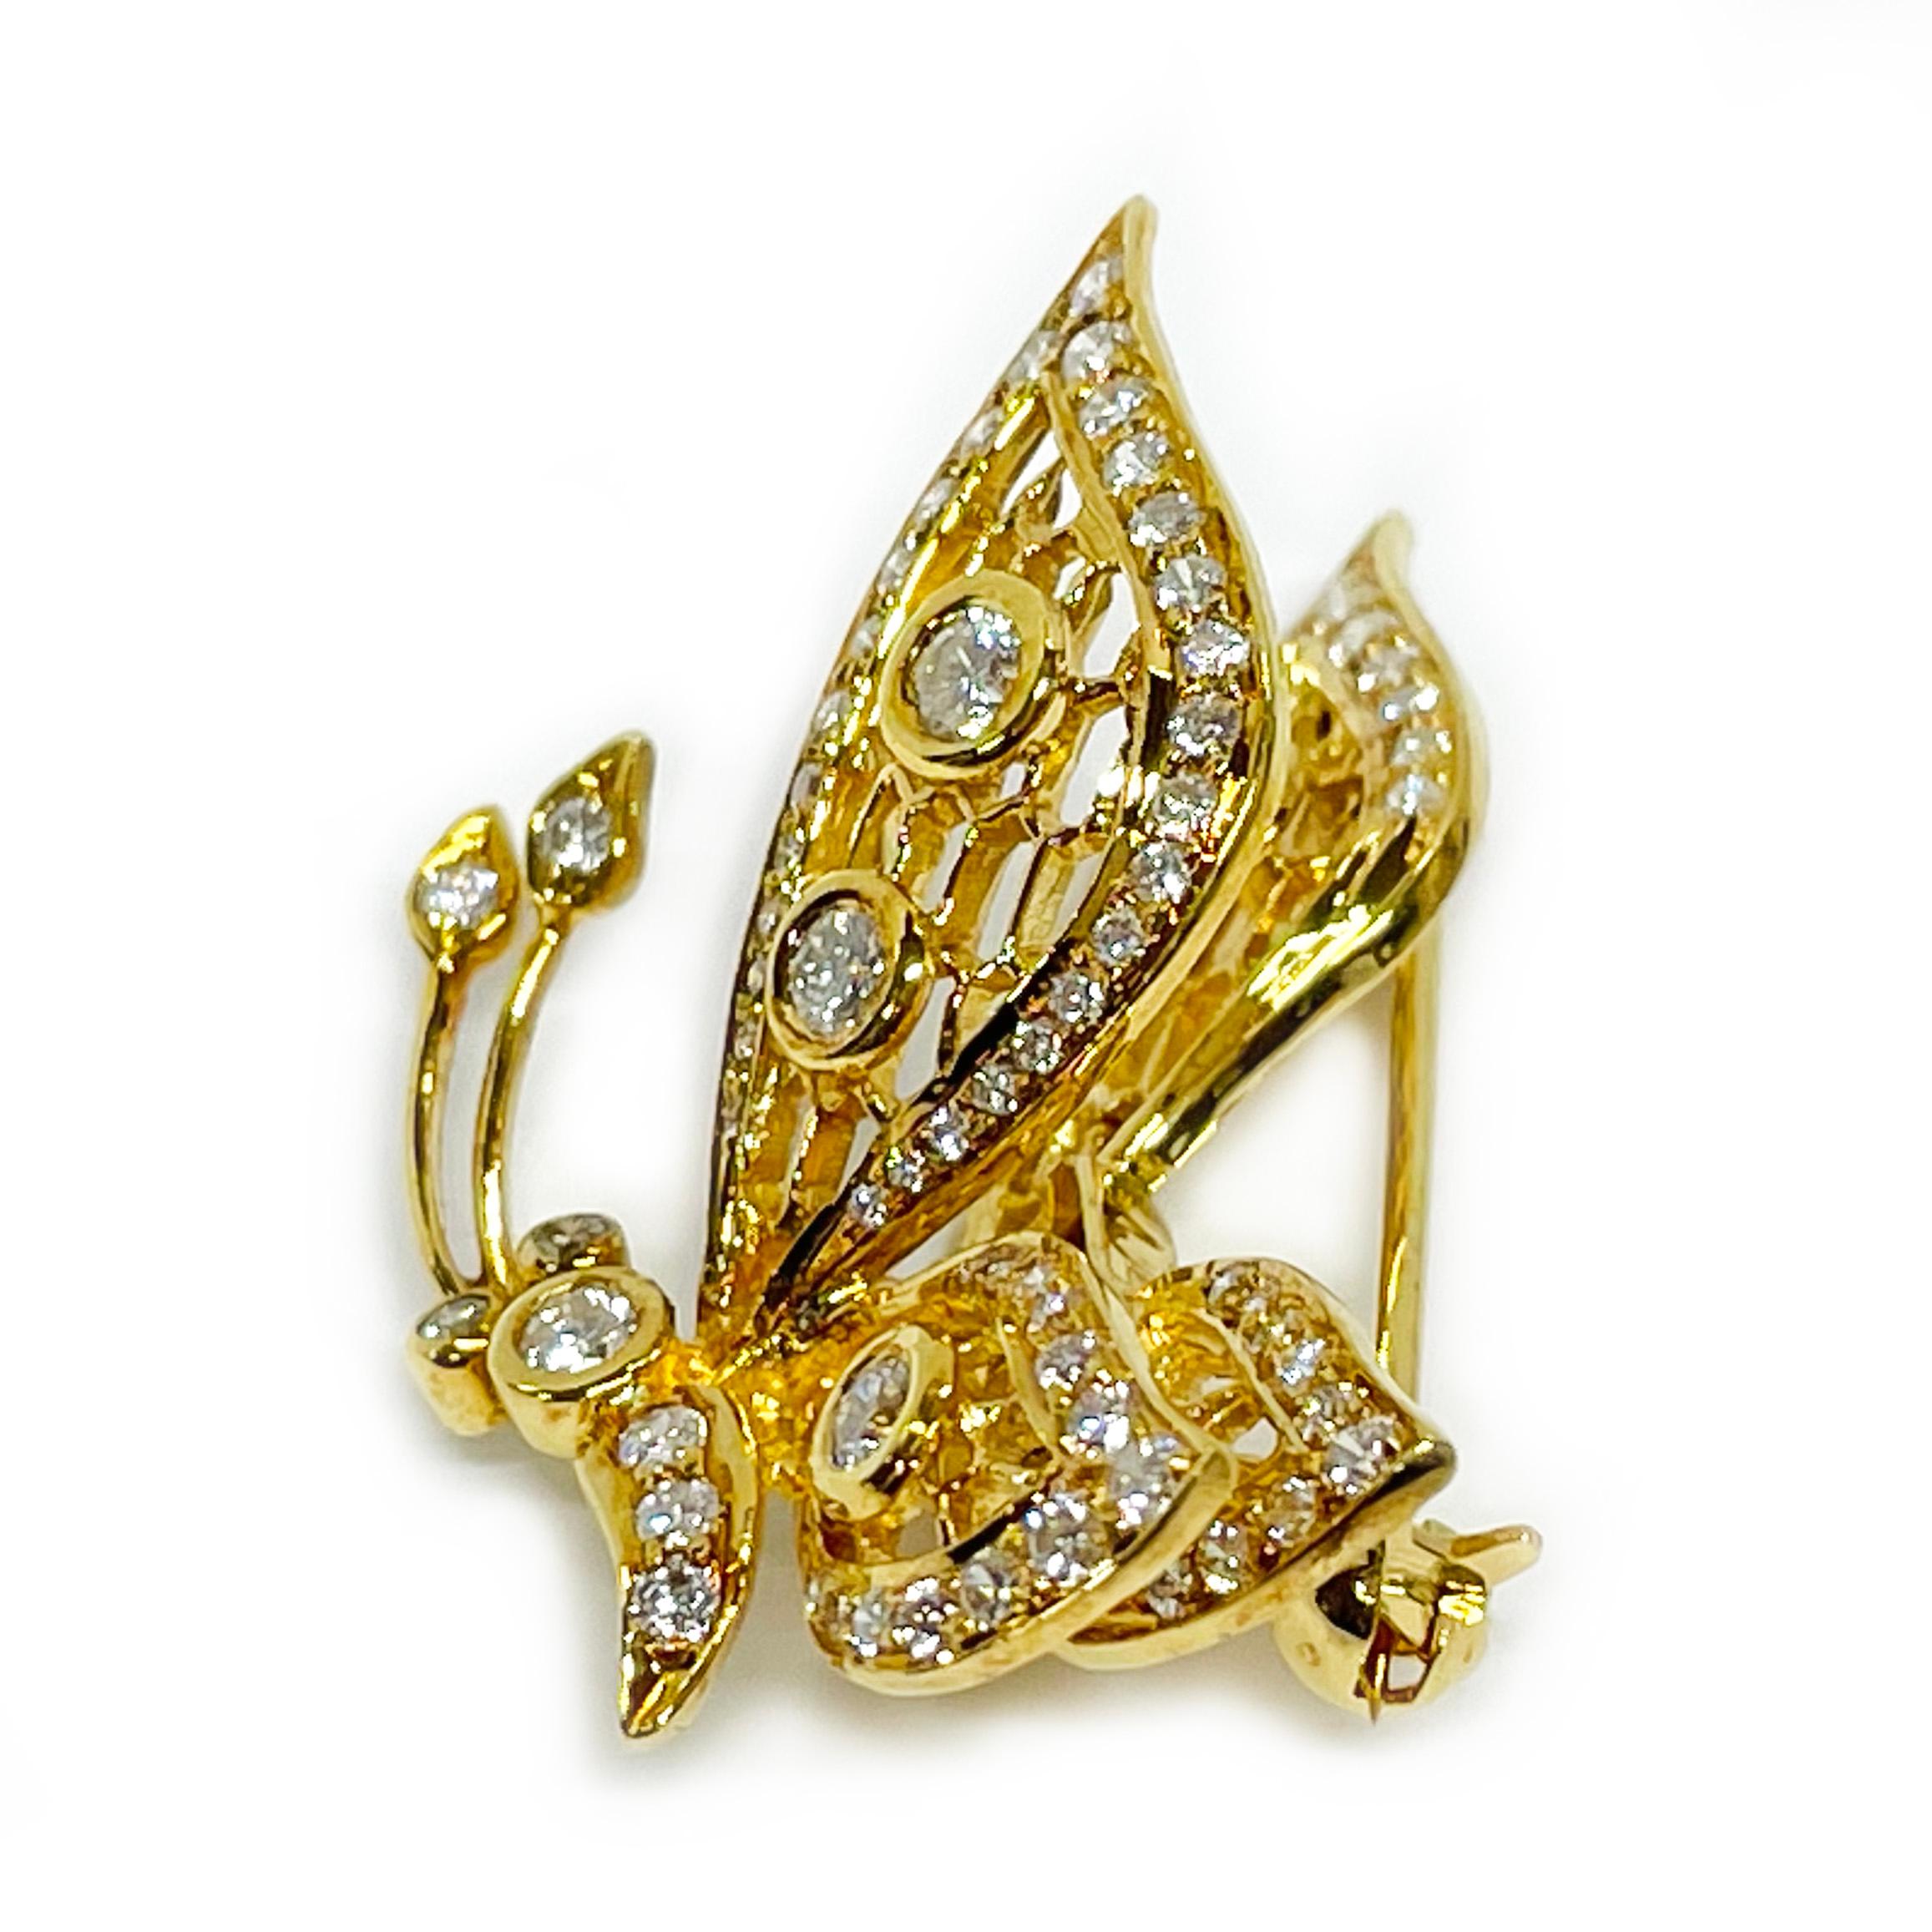 Broche papillon en or jaune 18 carats avec mouvement à ressort et diamants. Il s'agit d'une broche absolument magnifique, avec de superbes détails et des diamants de taille brillante sertis en chaton et en perle. Les diamants ornent les ailes, le